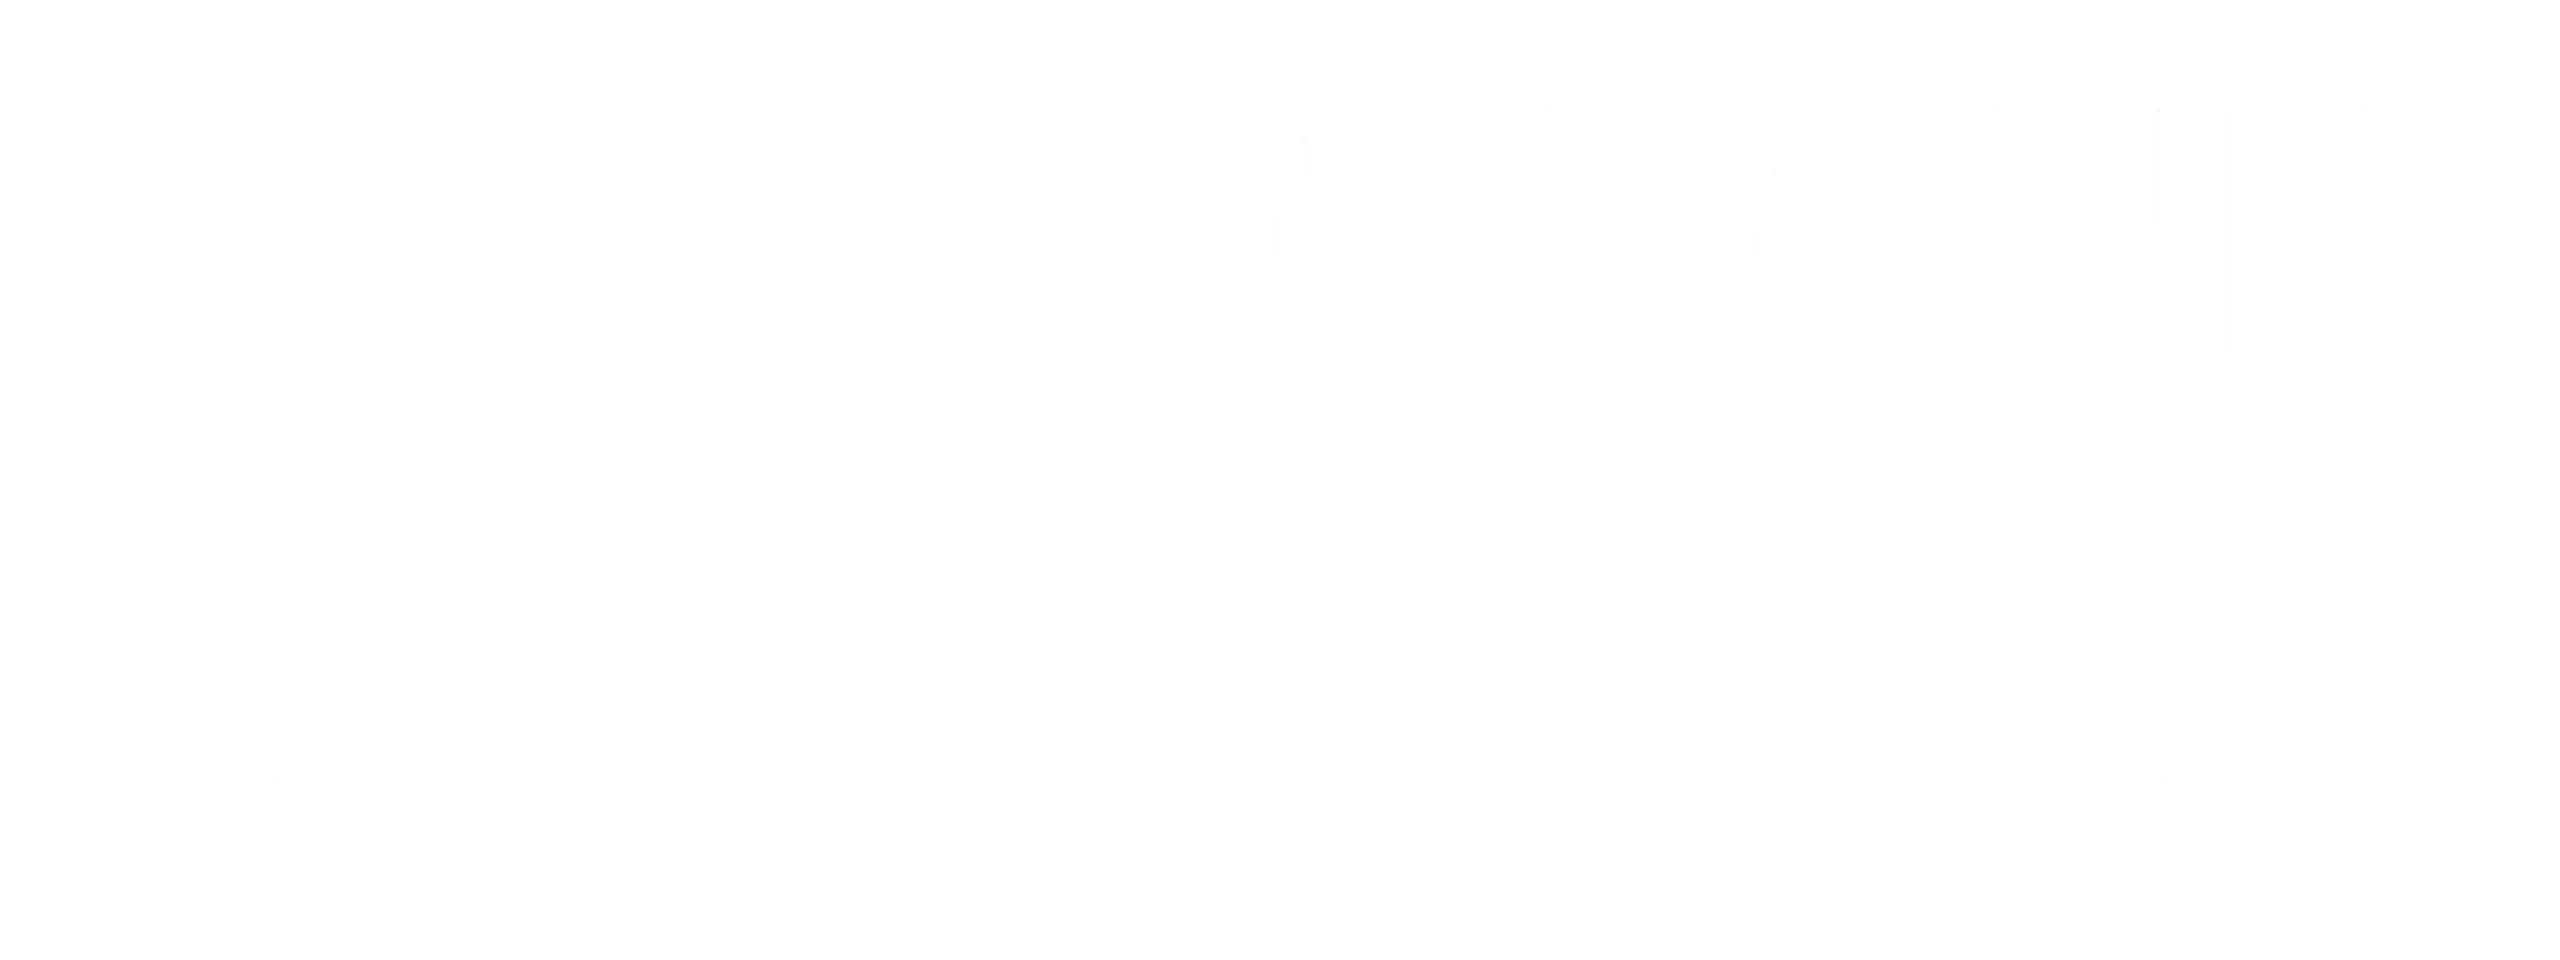 Banner PD Milano Centro - Circolo Aniasi: Simbolo di impegno politico e inclusione nel cuore di Milano.